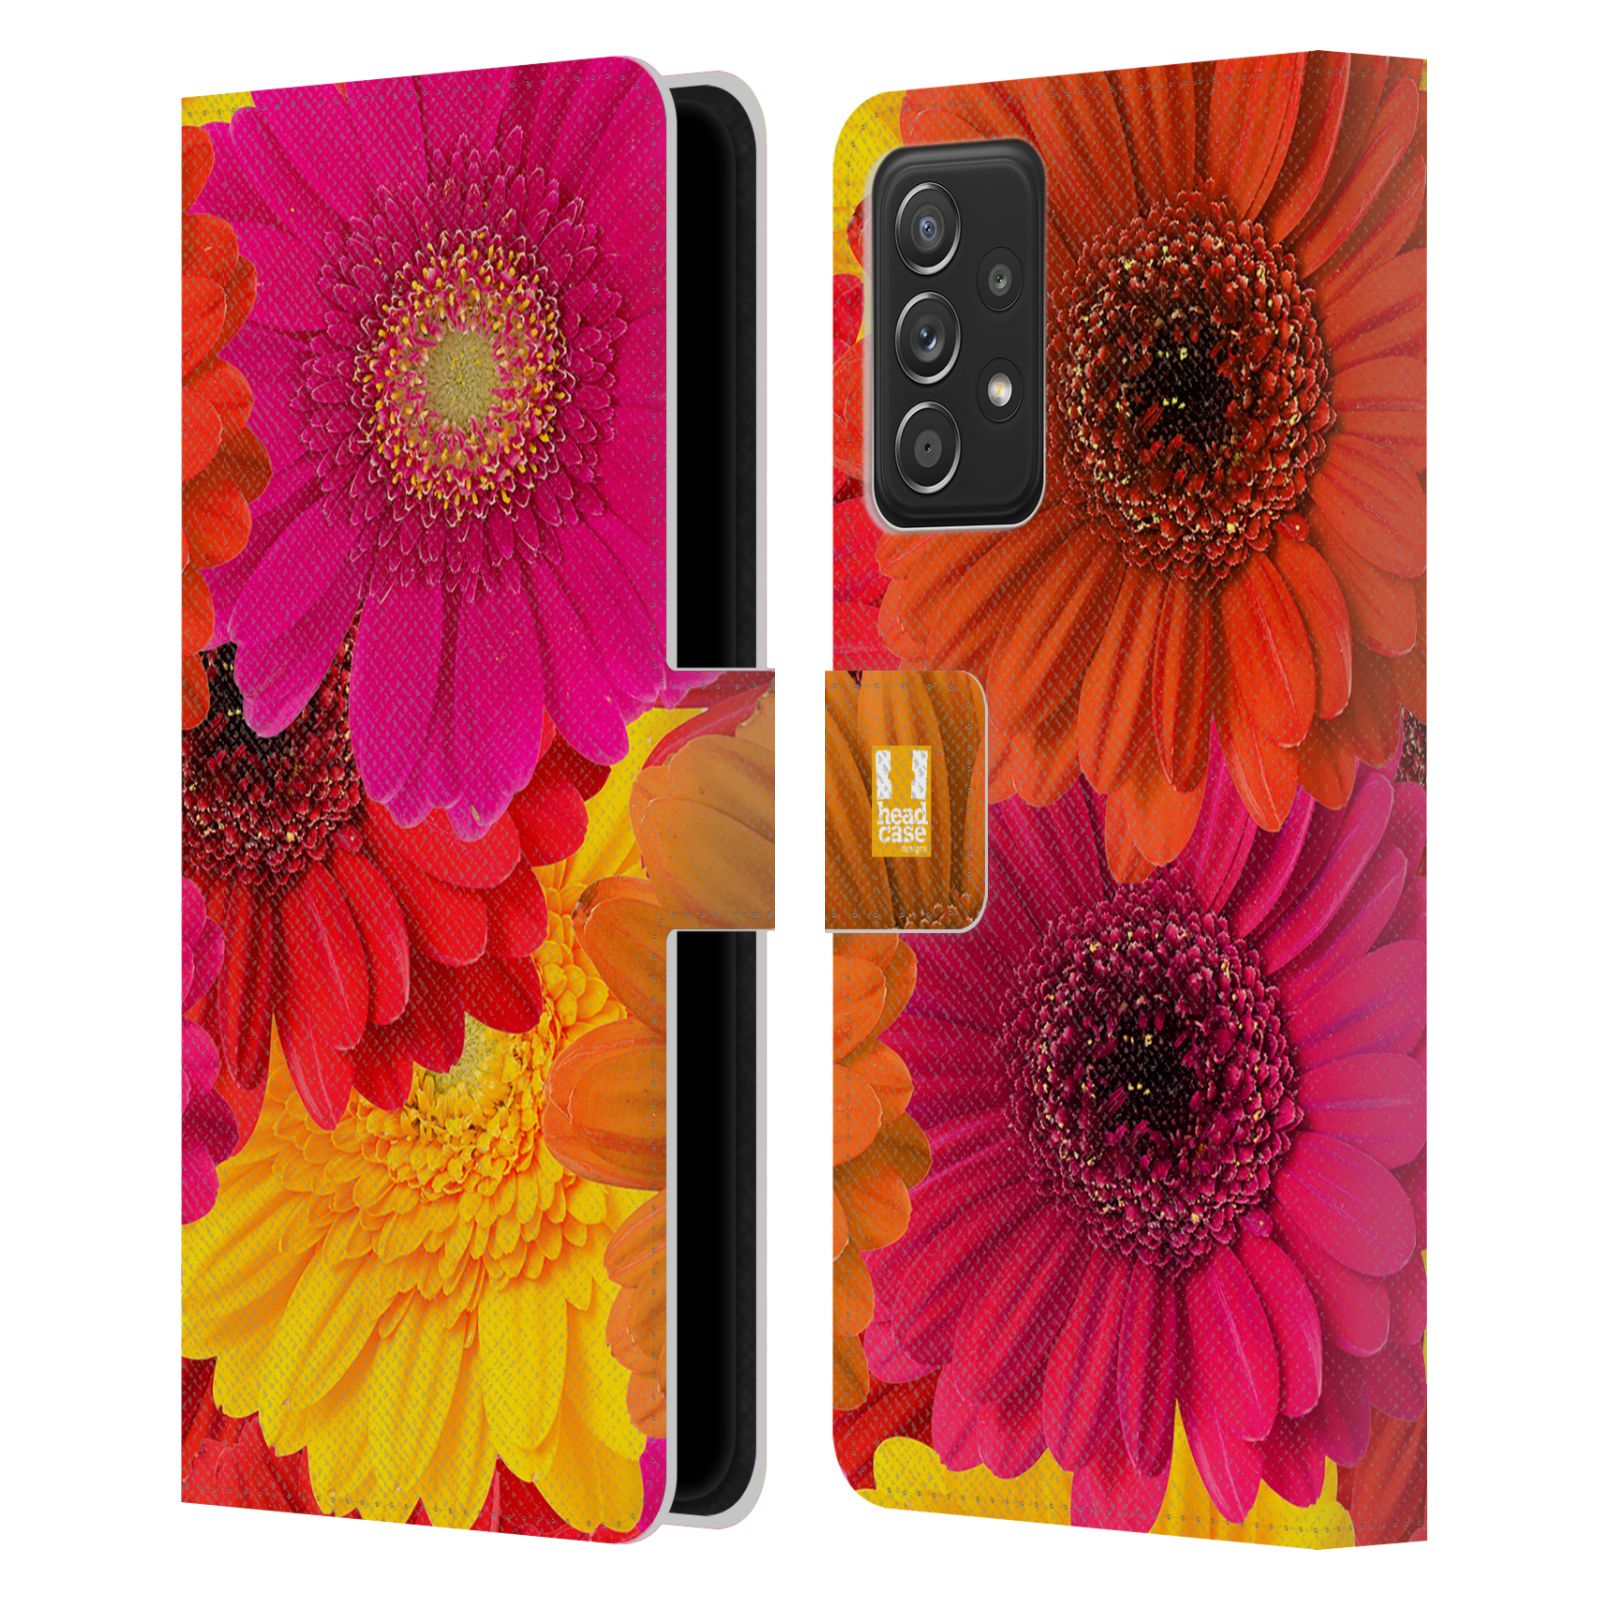 Pouzdro HEAD CASE na mobil Samsung Galaxy A52 / A52 5G / A52s 5G květy foto fialová, oranžová GERBERA